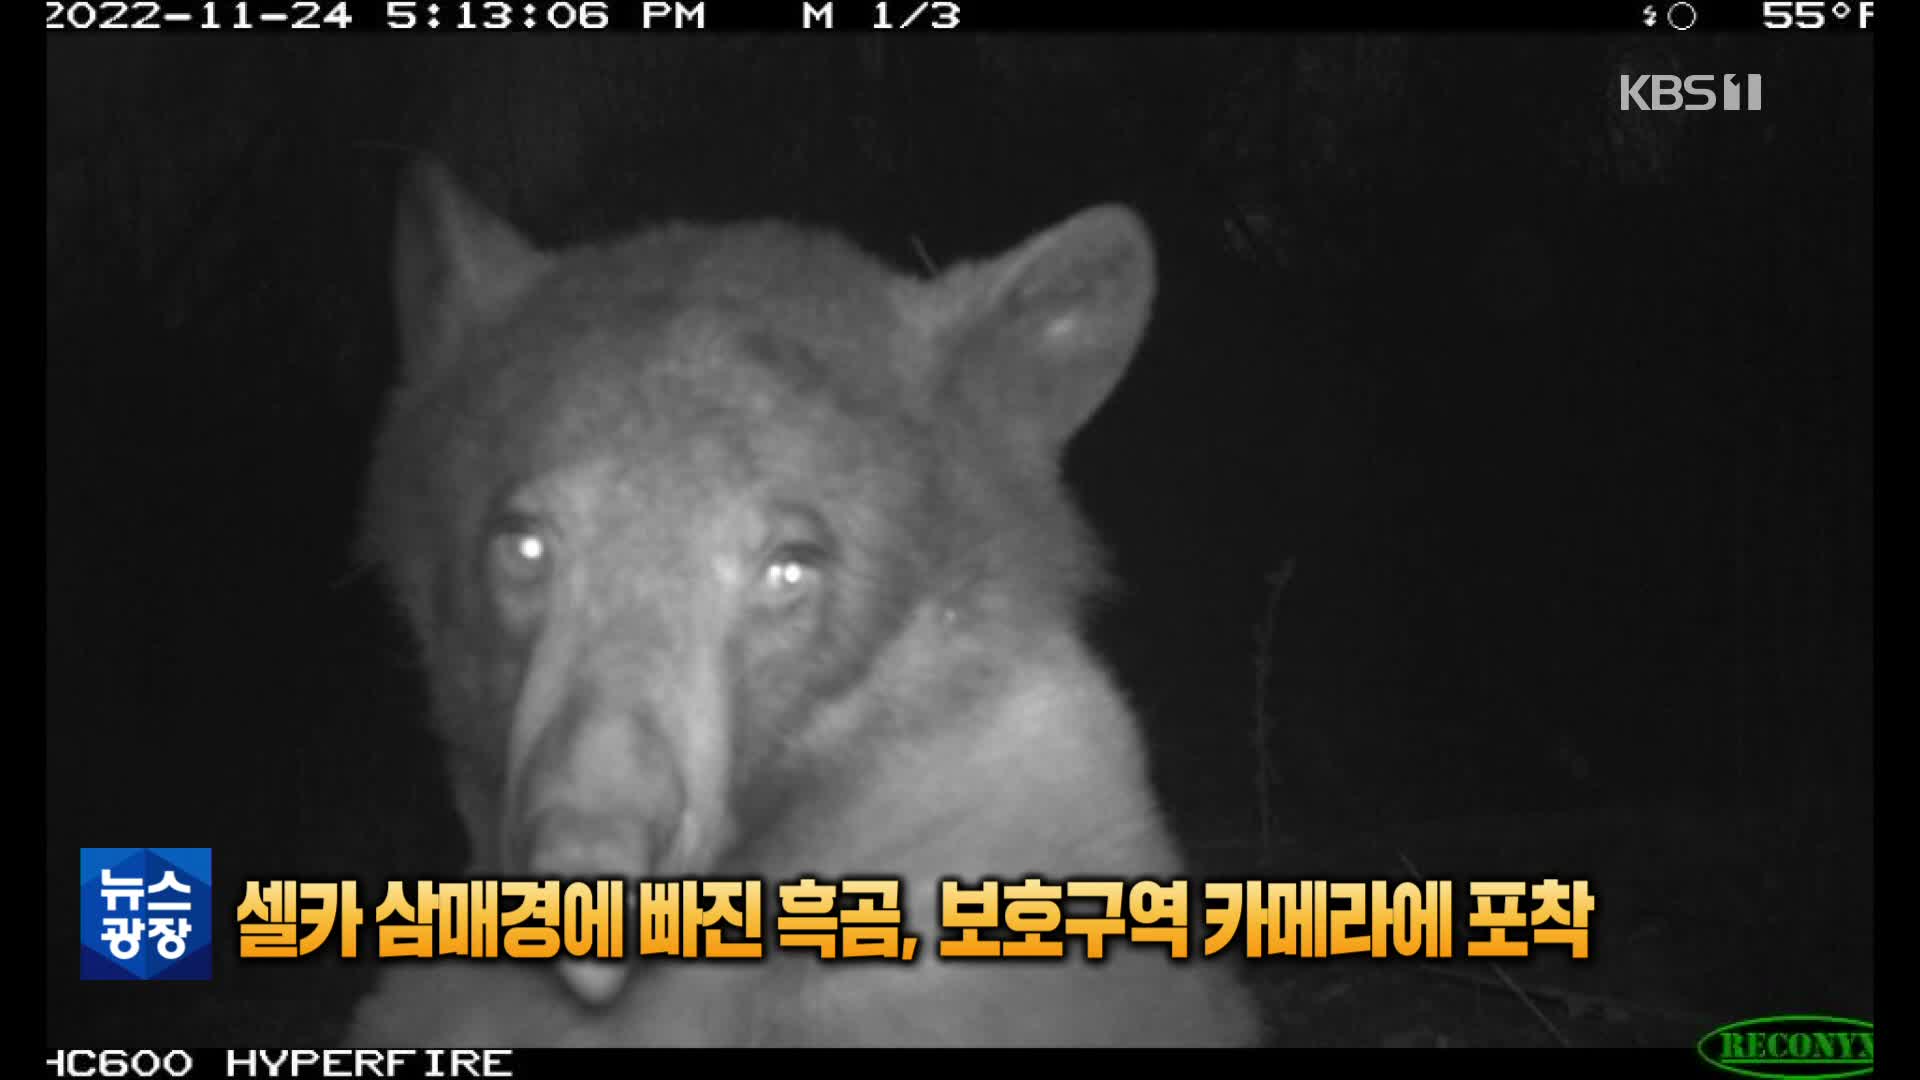 [톡톡 지구촌] 셀카 삼매경에 빠진 흑곰, 보호구역 카메라에 포착